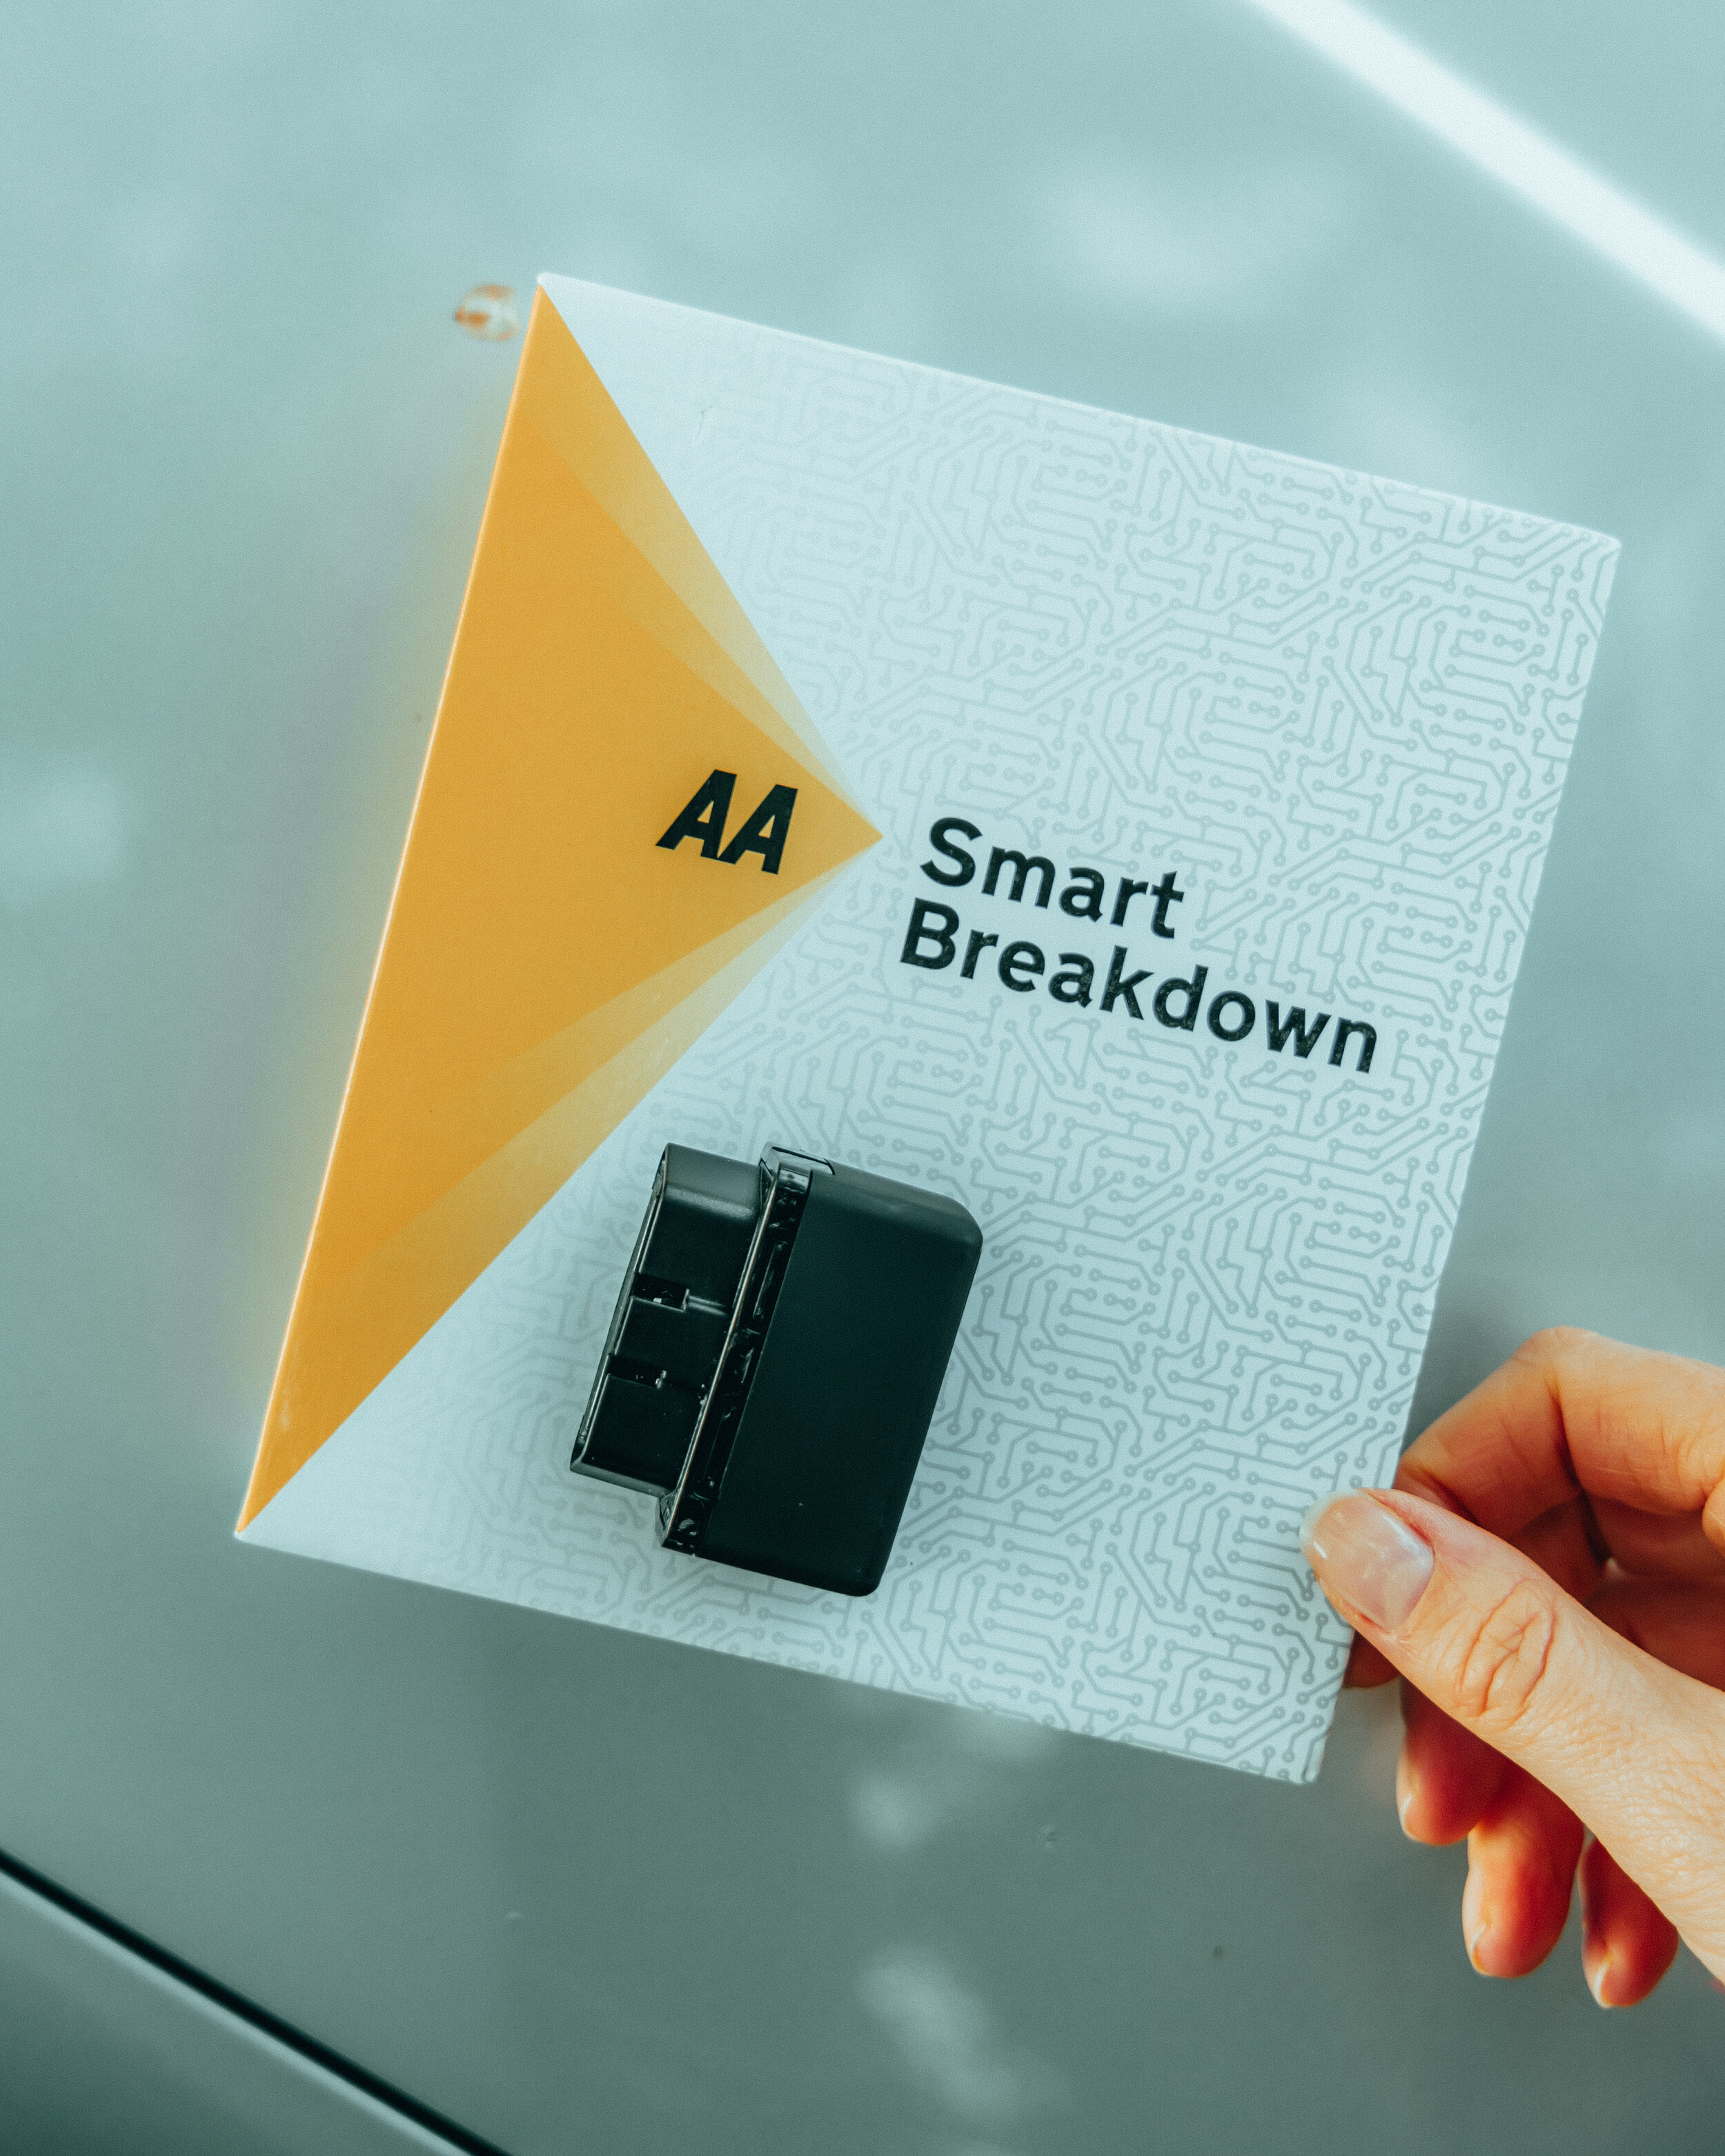 Smart Breakdown from the AA